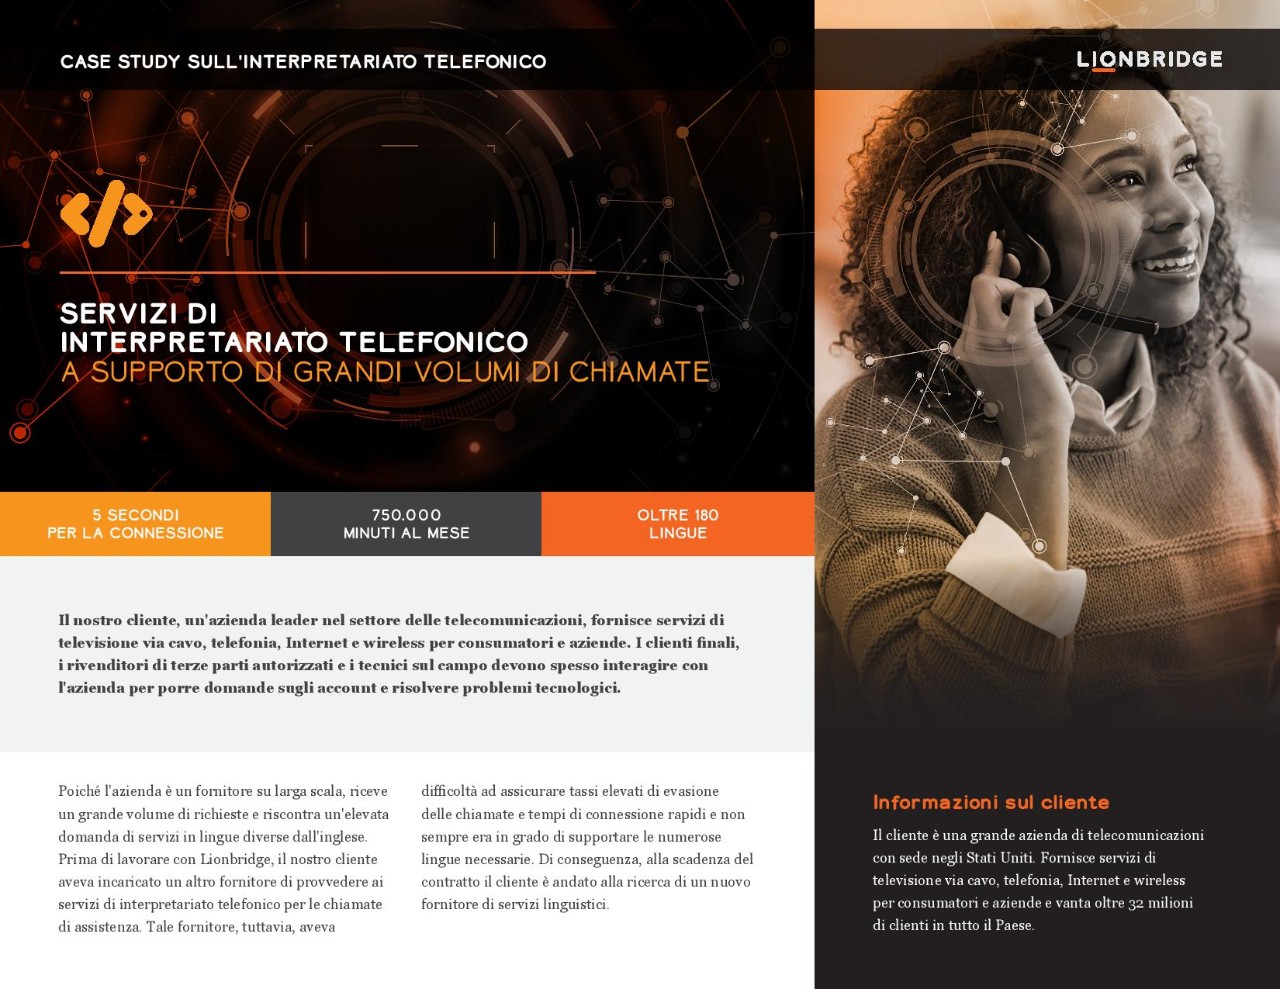 Copertina del case study sull'interpretariato telefonico per un'azienda di telecomunicazioni